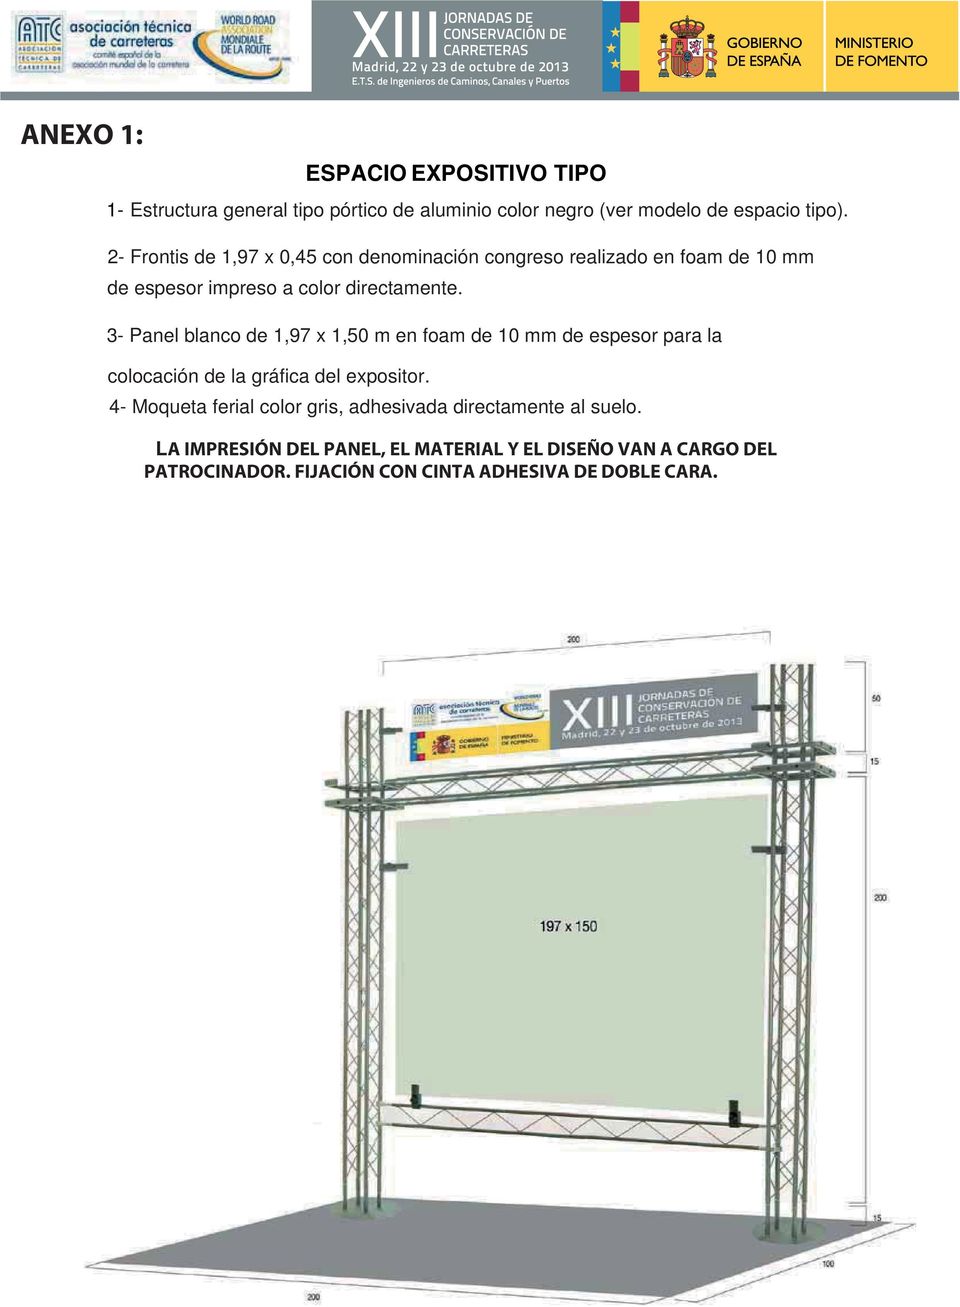 3- Panel blanco de 1,97 x 1,50 m en foam de 10 mm de espesor para la colocación de la gráfica del expositor.